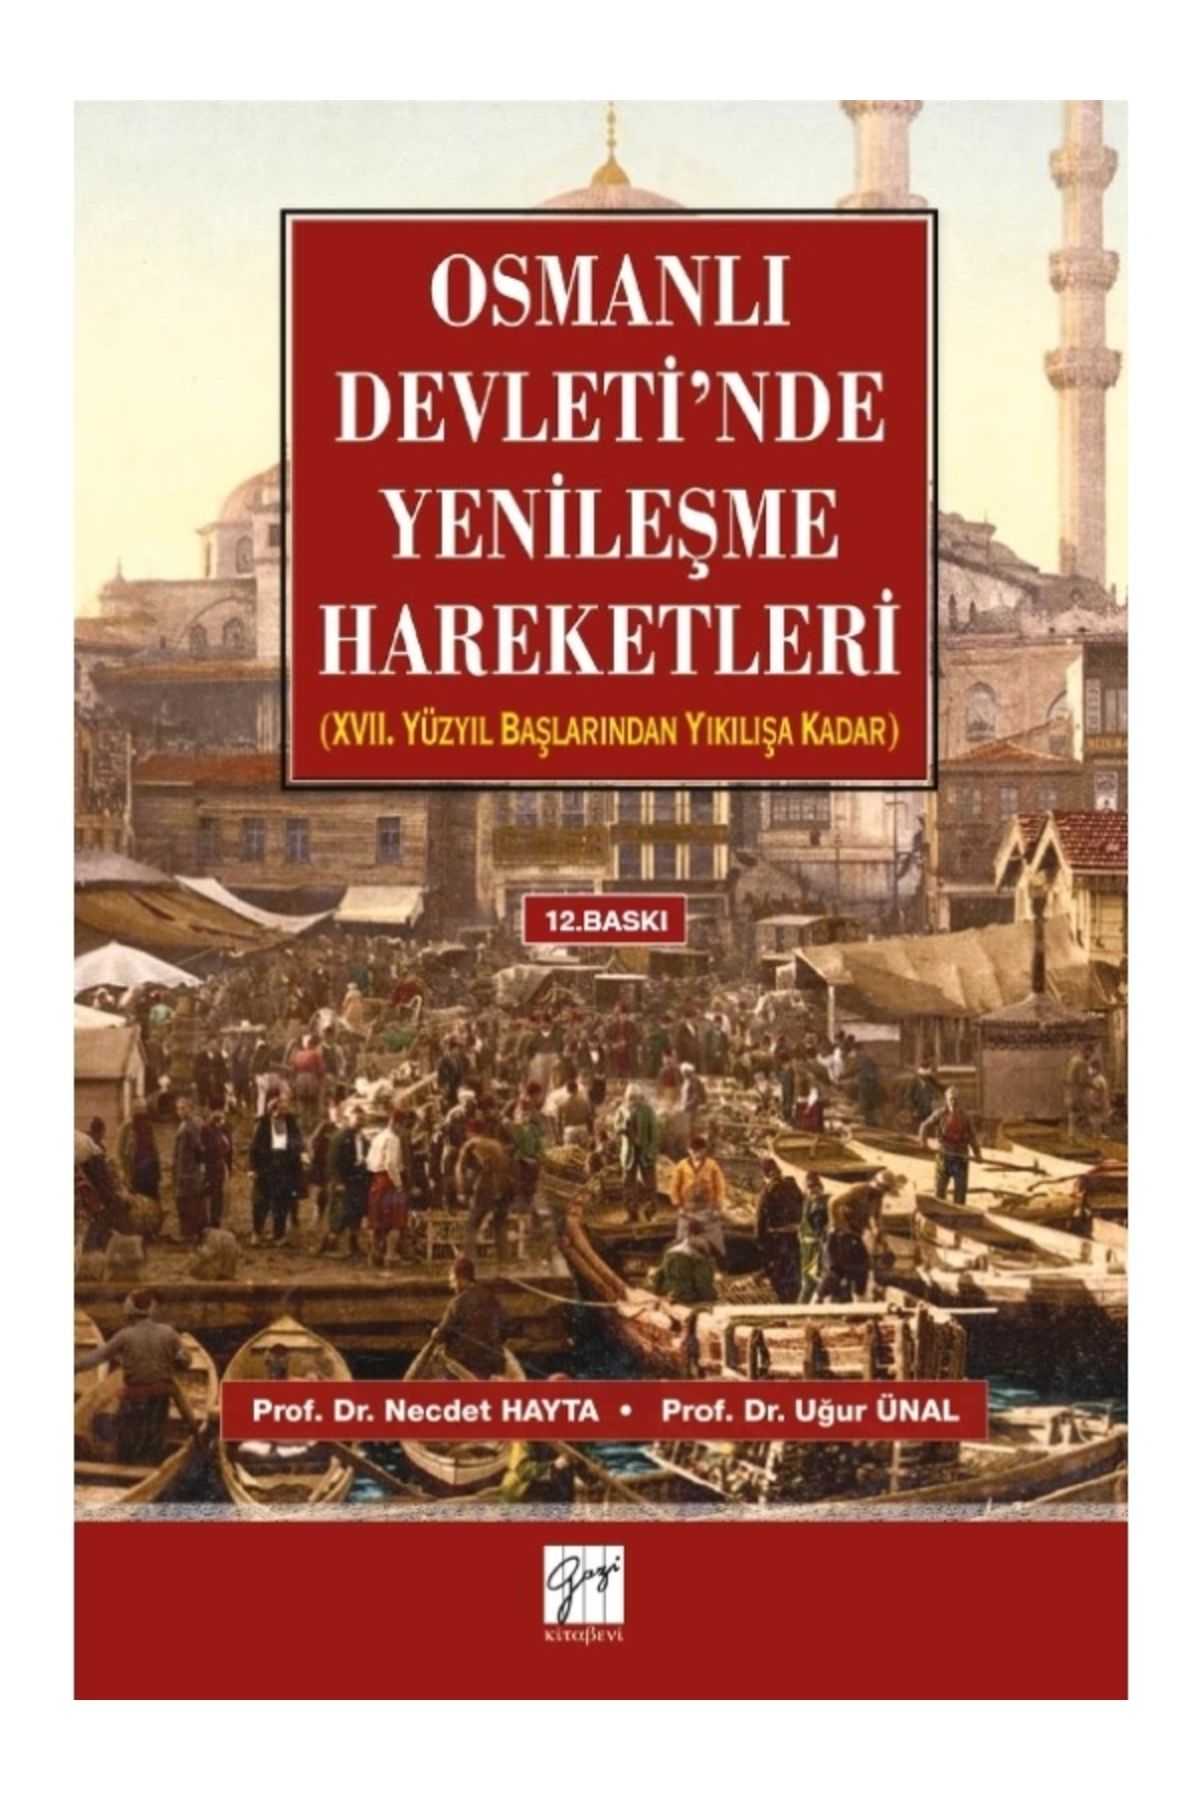 Gazi Kitabevi Osmanlı Devletinde Yenileşme Hareketleri-necdet Hayta-uğur Ünal